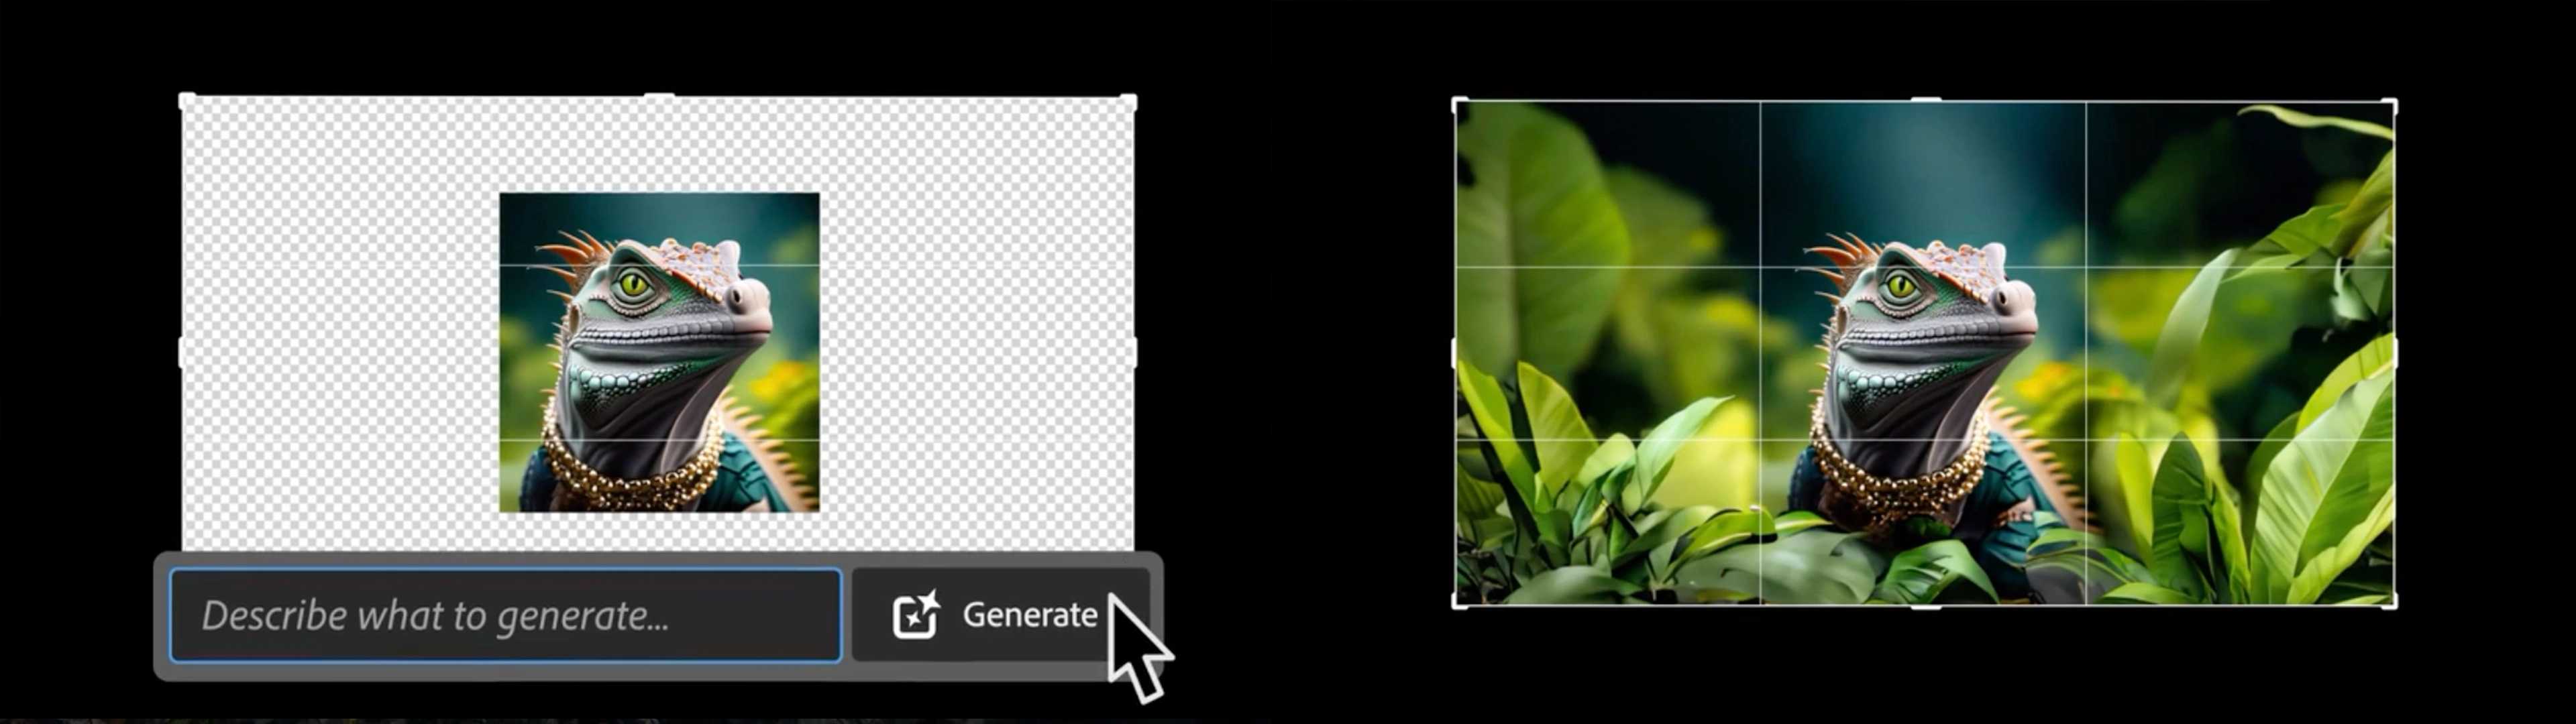 Adobe Photoshop generatiivinen täyttö kuvan laajentaminen